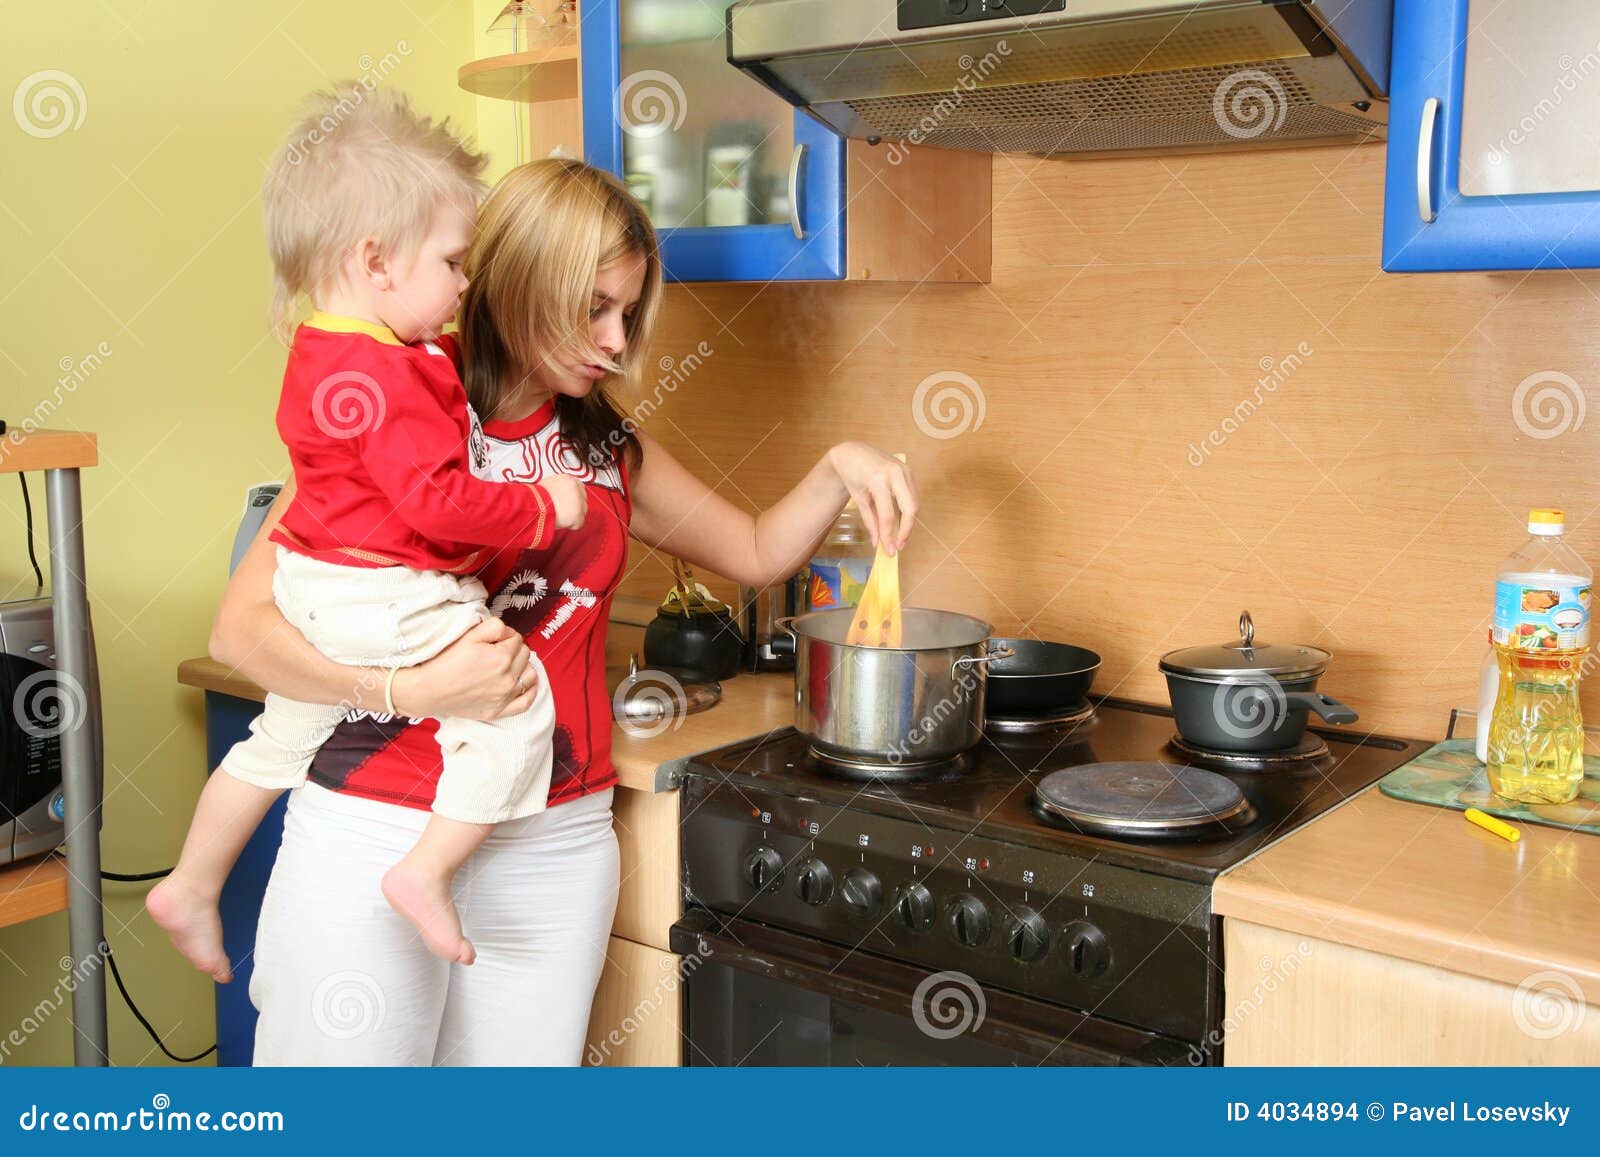 Приходит сын на кухню. Кухня для детей. Мама с ребенком на кухне. Фотосессия мама и дети на кухне. Женщина с ребенком на кухне.